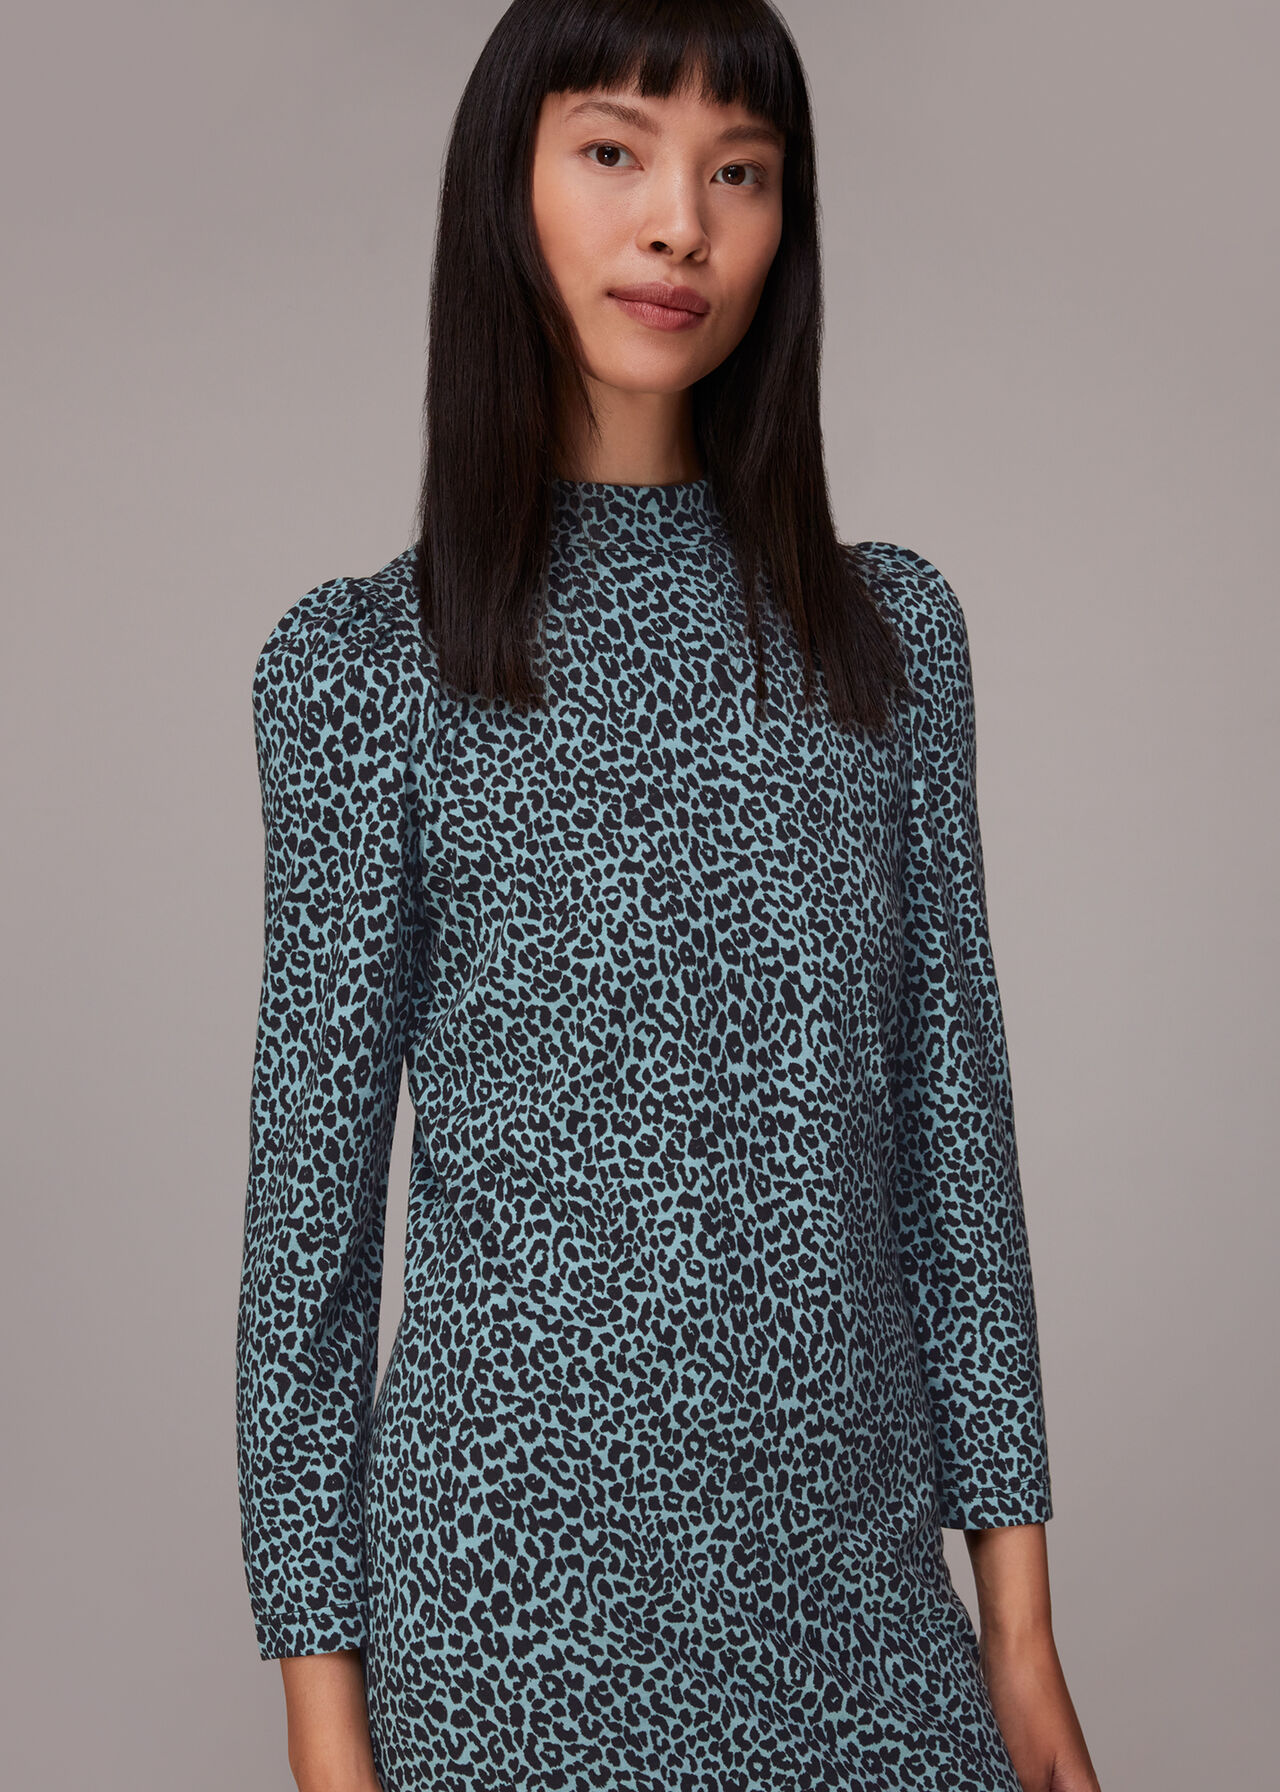 Contrast Leopard Jersey Dress